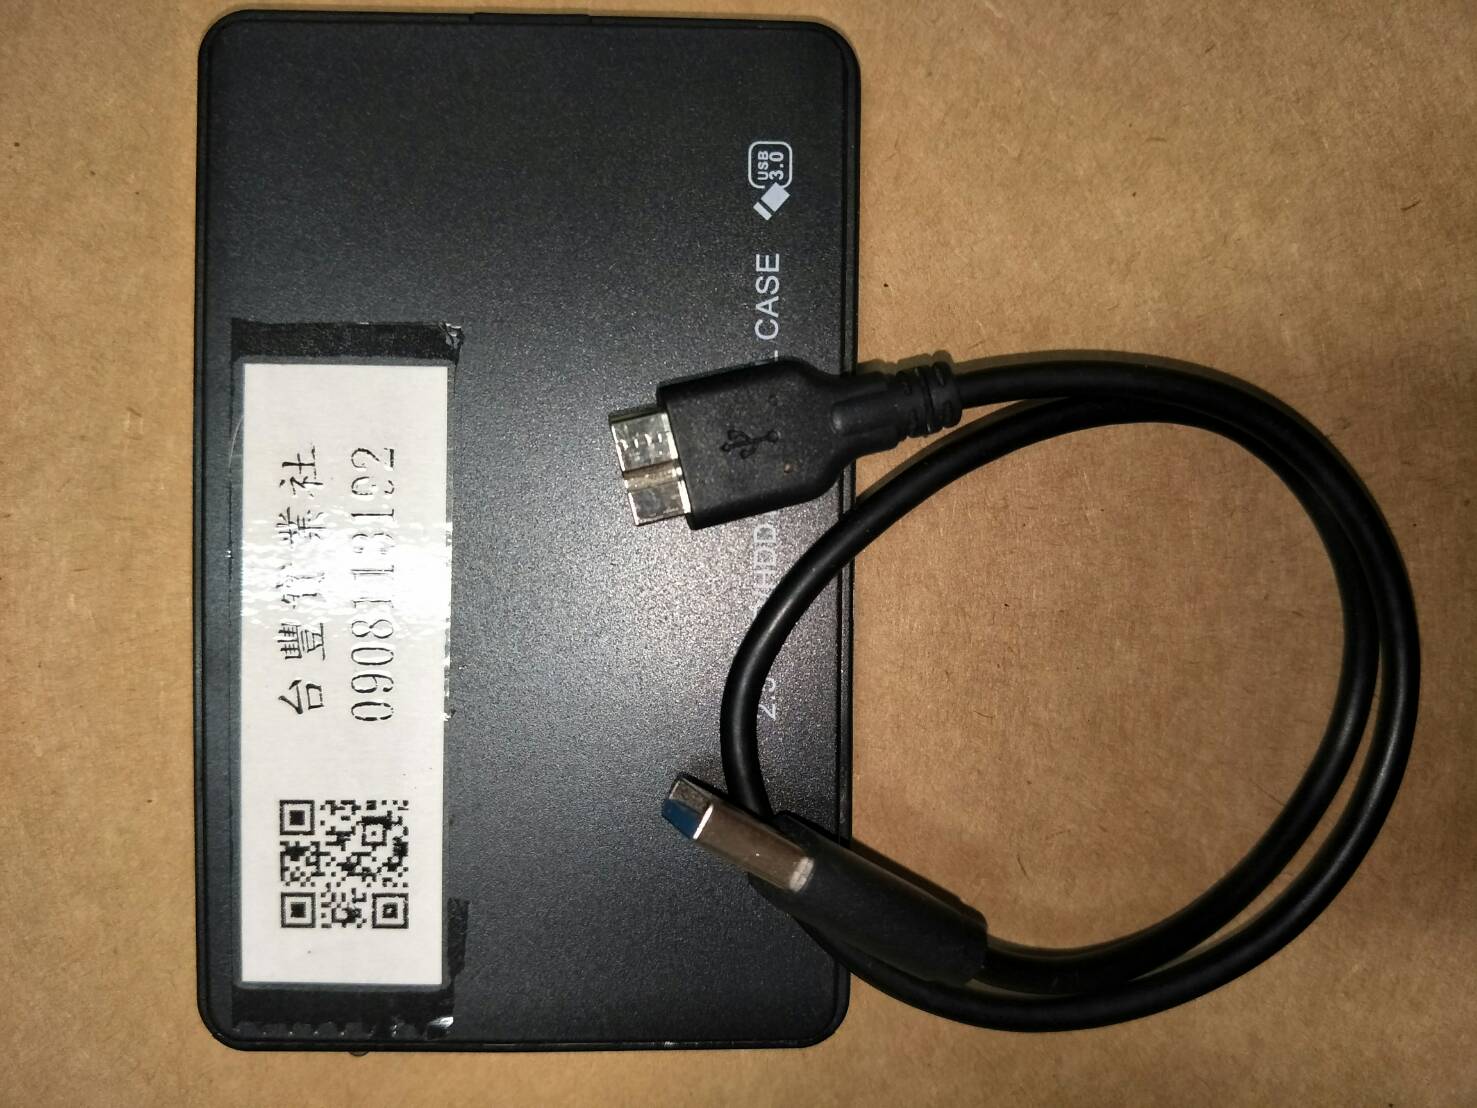 代售二手_SSD 500GB 2.5吋 外接式固態硬碟/USB3.0隨身碟硬碟(圖)